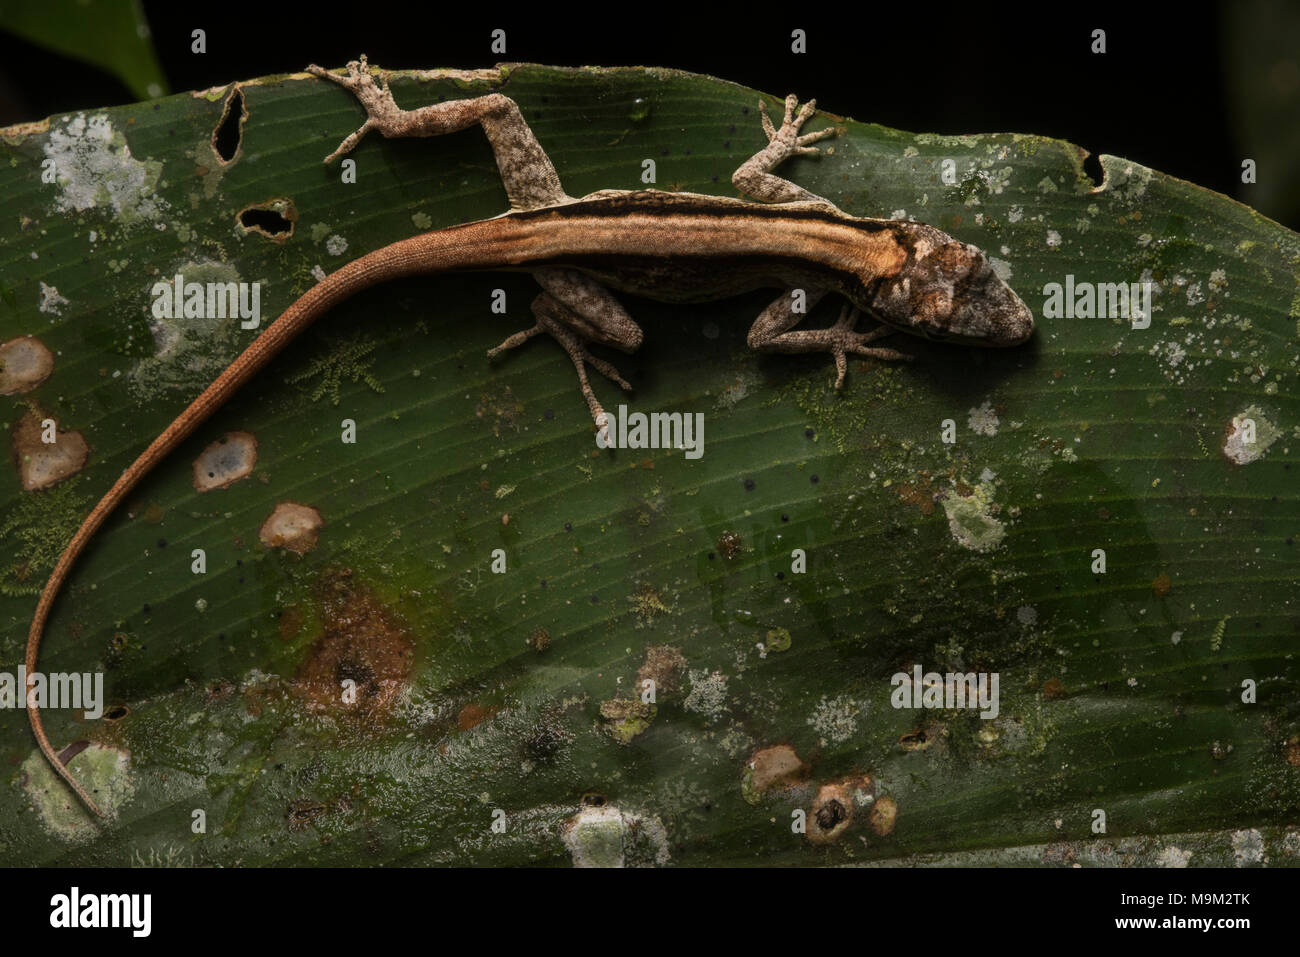 Eine kleine Eidechse Anole schläft auf einem Blatt, dass hat auch einige Pilze und Flechten. Stockfoto